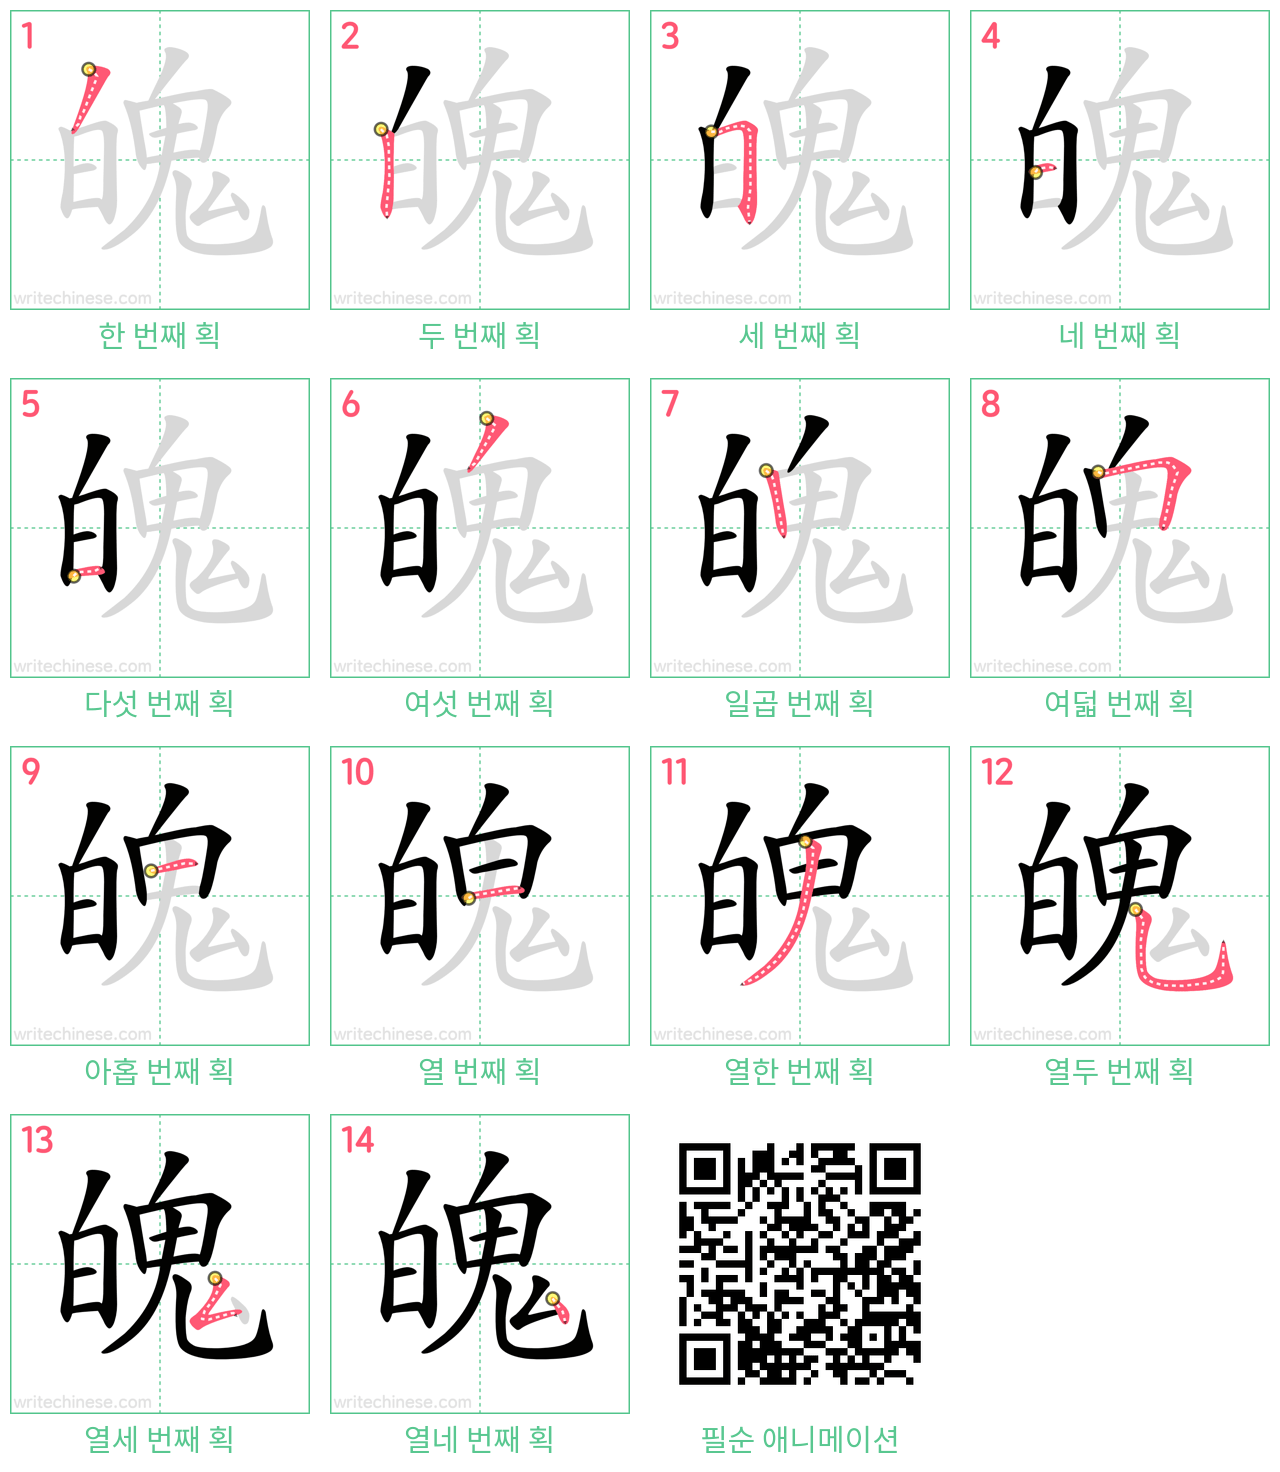 魄 step-by-step stroke order diagrams